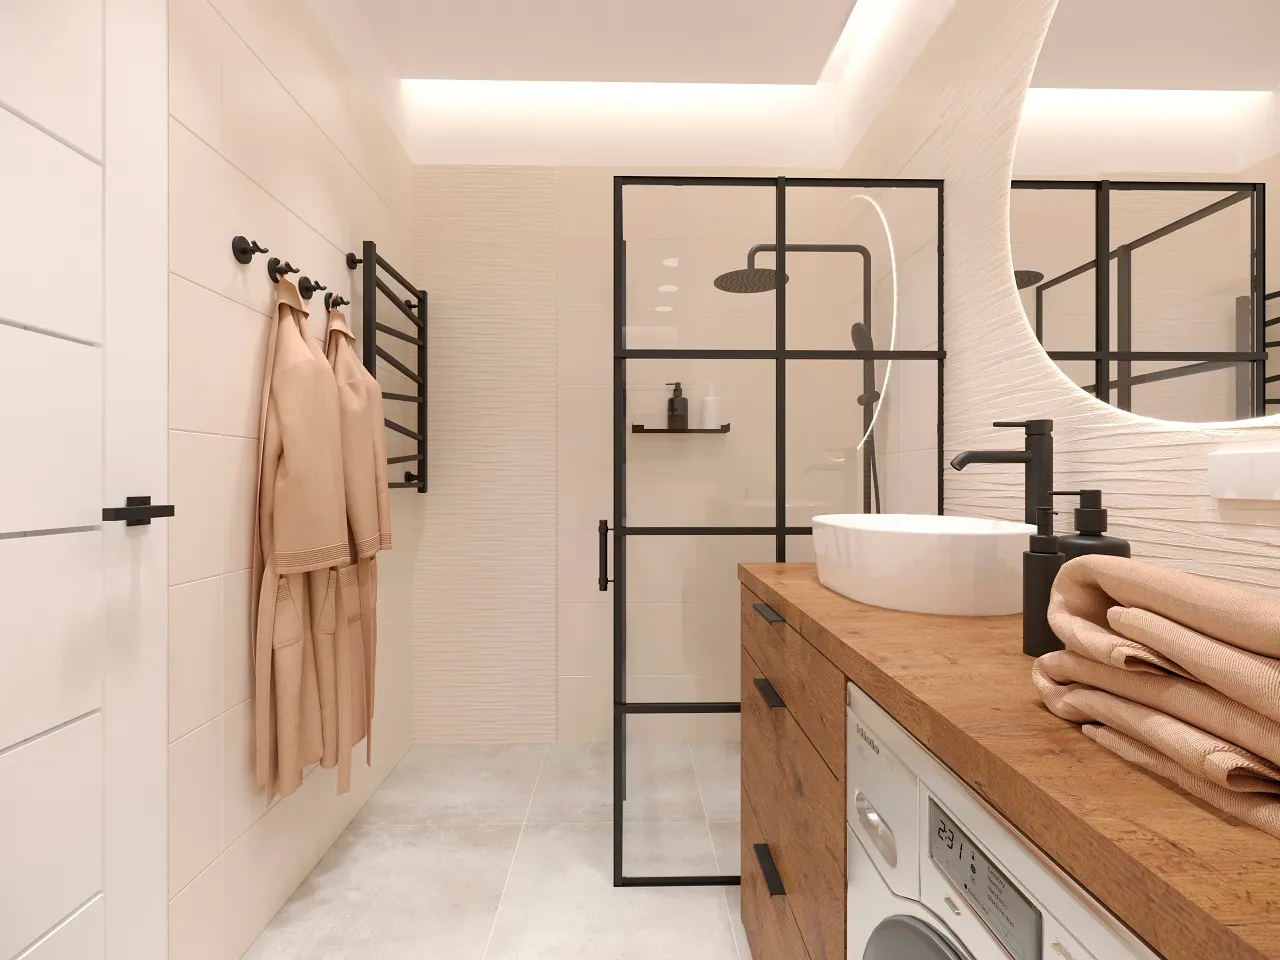 Łazienka w stylu industrialnym w odcieniach bieli, szarości i czerni z czarym prysznicem